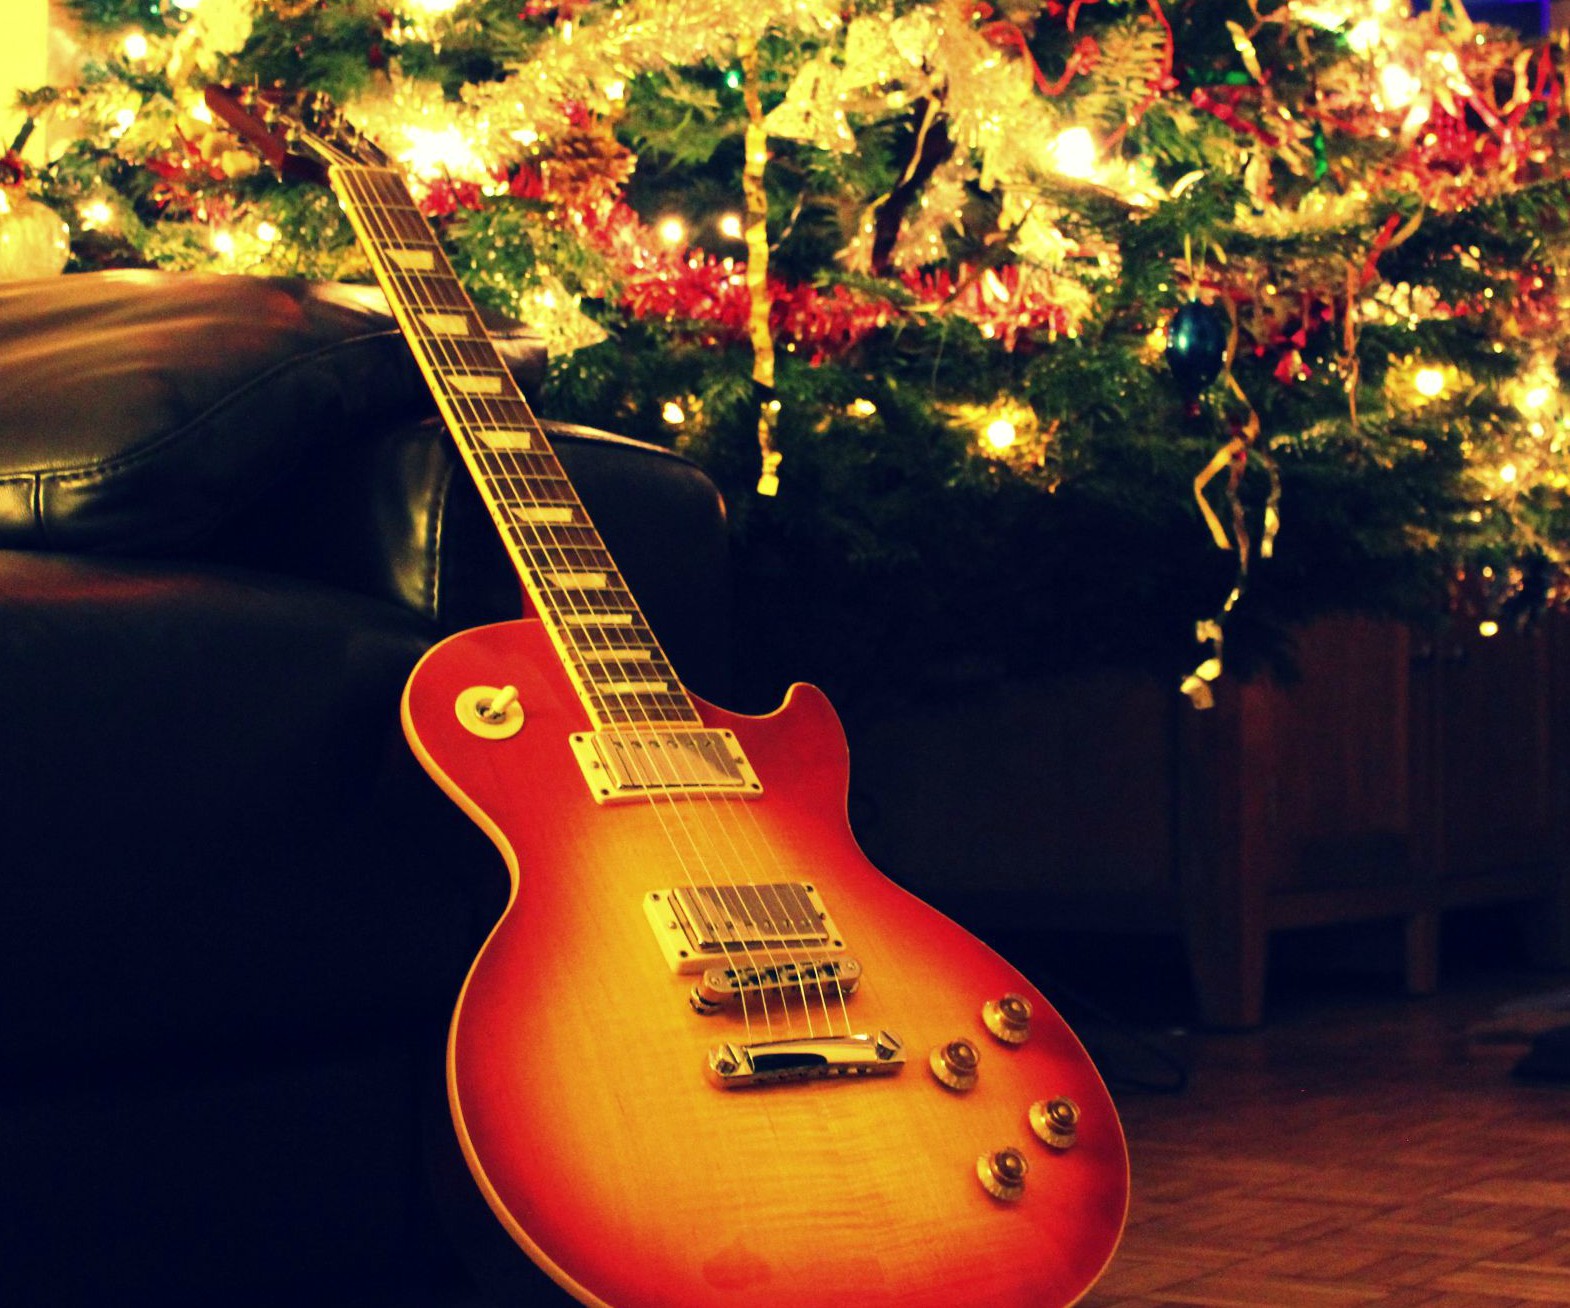 Acercarse vino Sueño áspero Las mejores canciones de Navidad tocadas en guitarra | Guitarristas